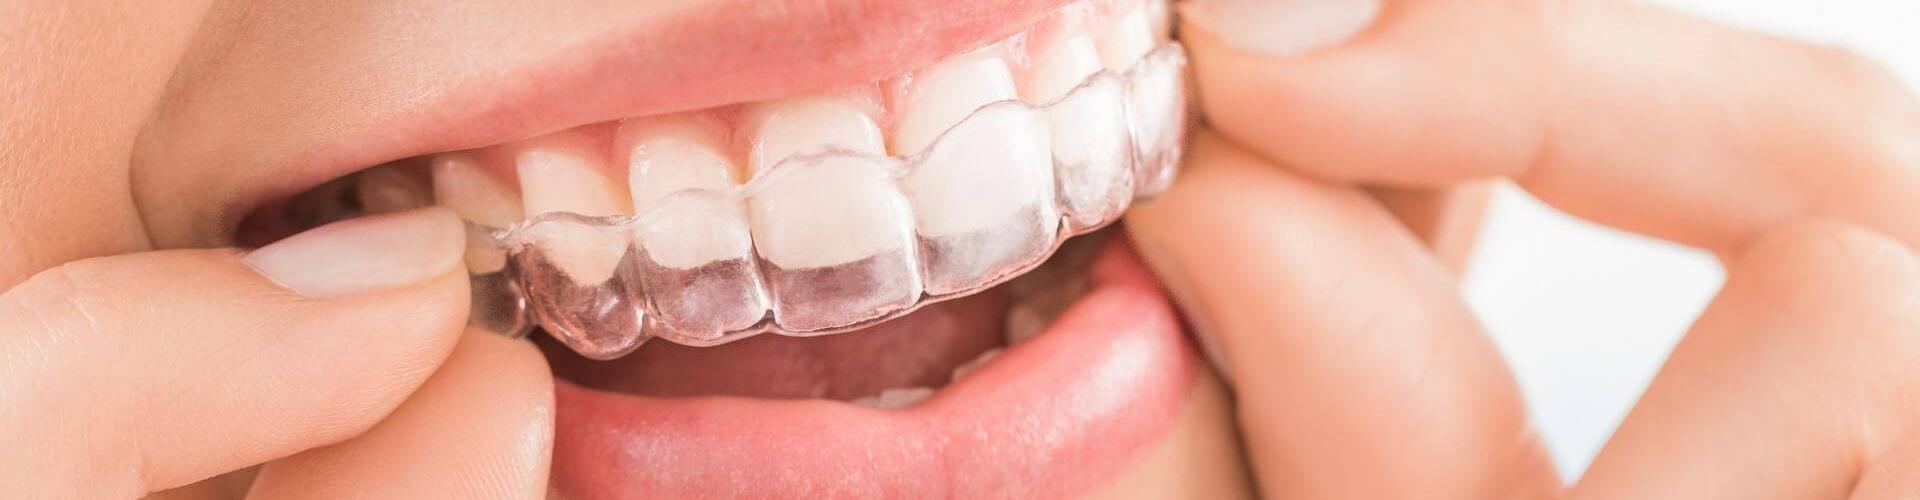 aligner trasparenti dentali